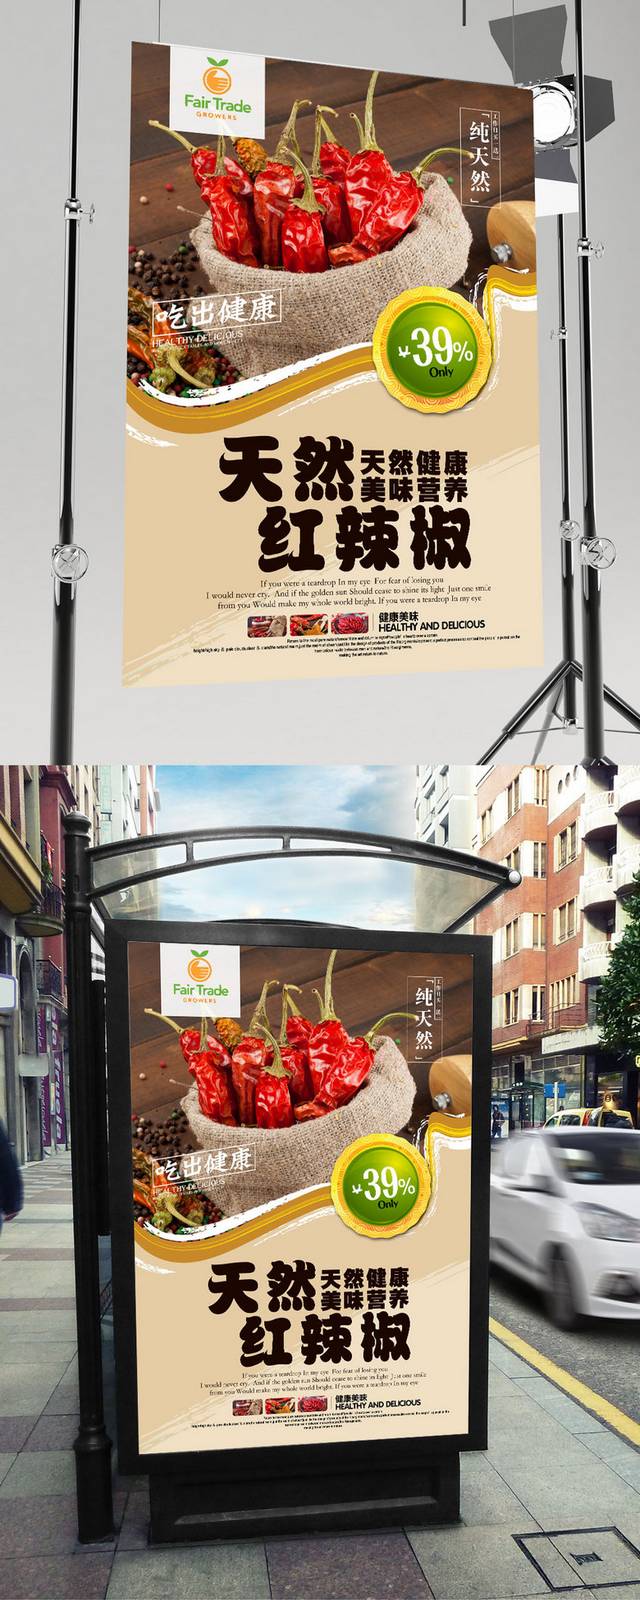 高清彩色笔刷辣椒宣传海报设计